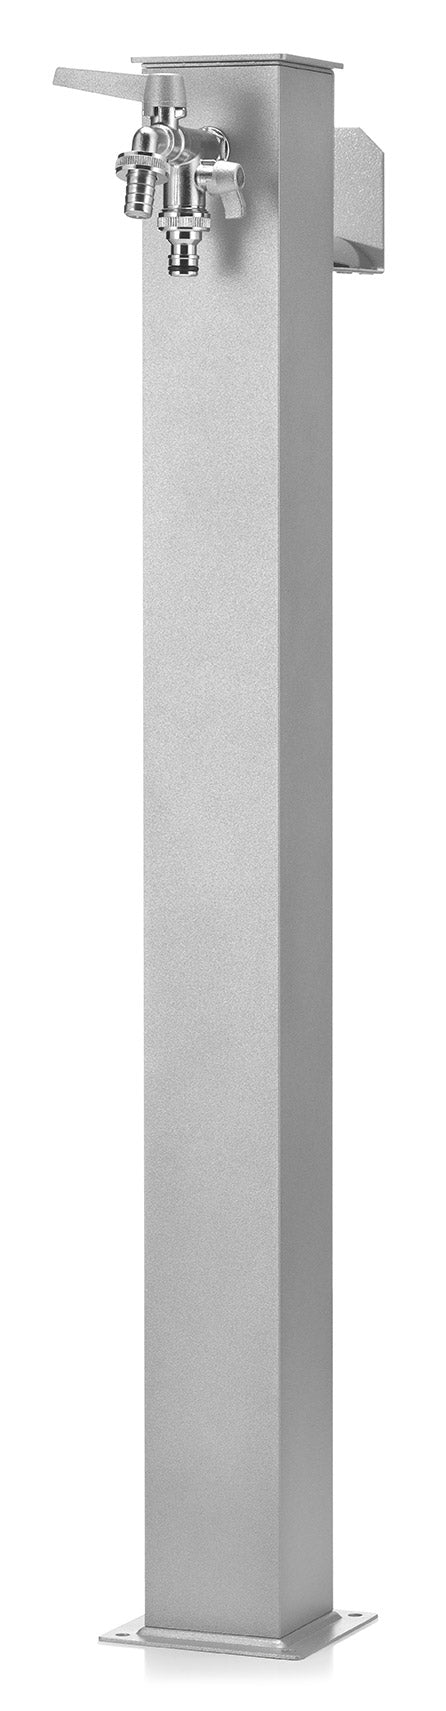 Fontana da Giardino con Doppio Rubinetto Belfer 42/QRR Alluminio online